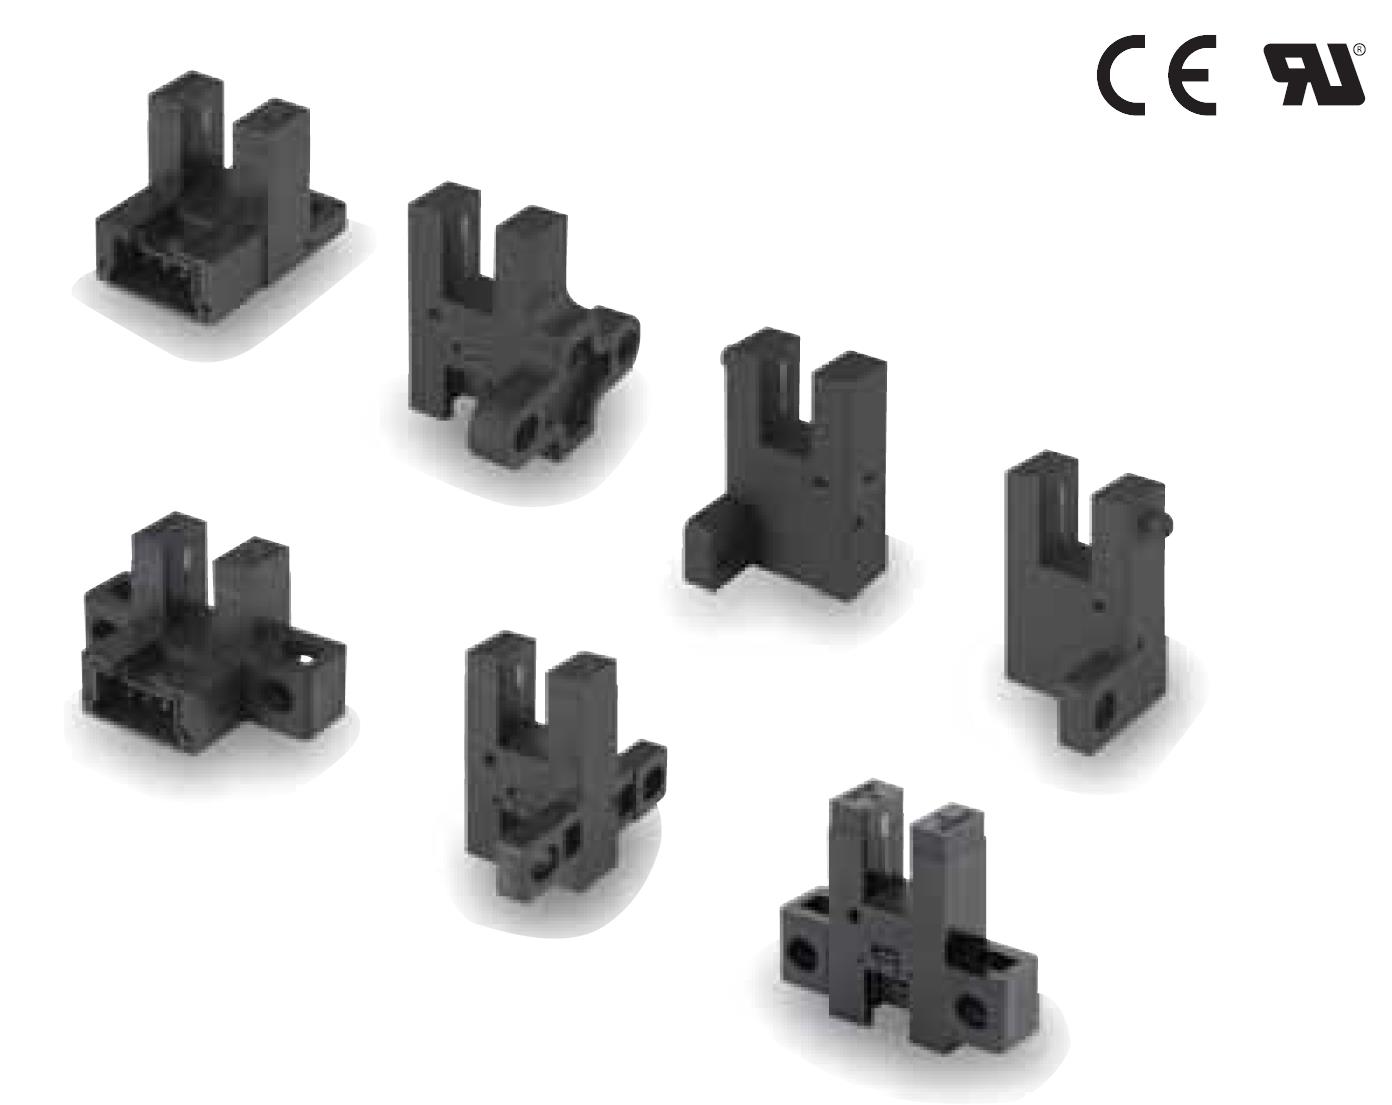 准备导压部Rc(PT)1/8型(-R)
EE-SX975-C1凹槽连接器型光电传感器